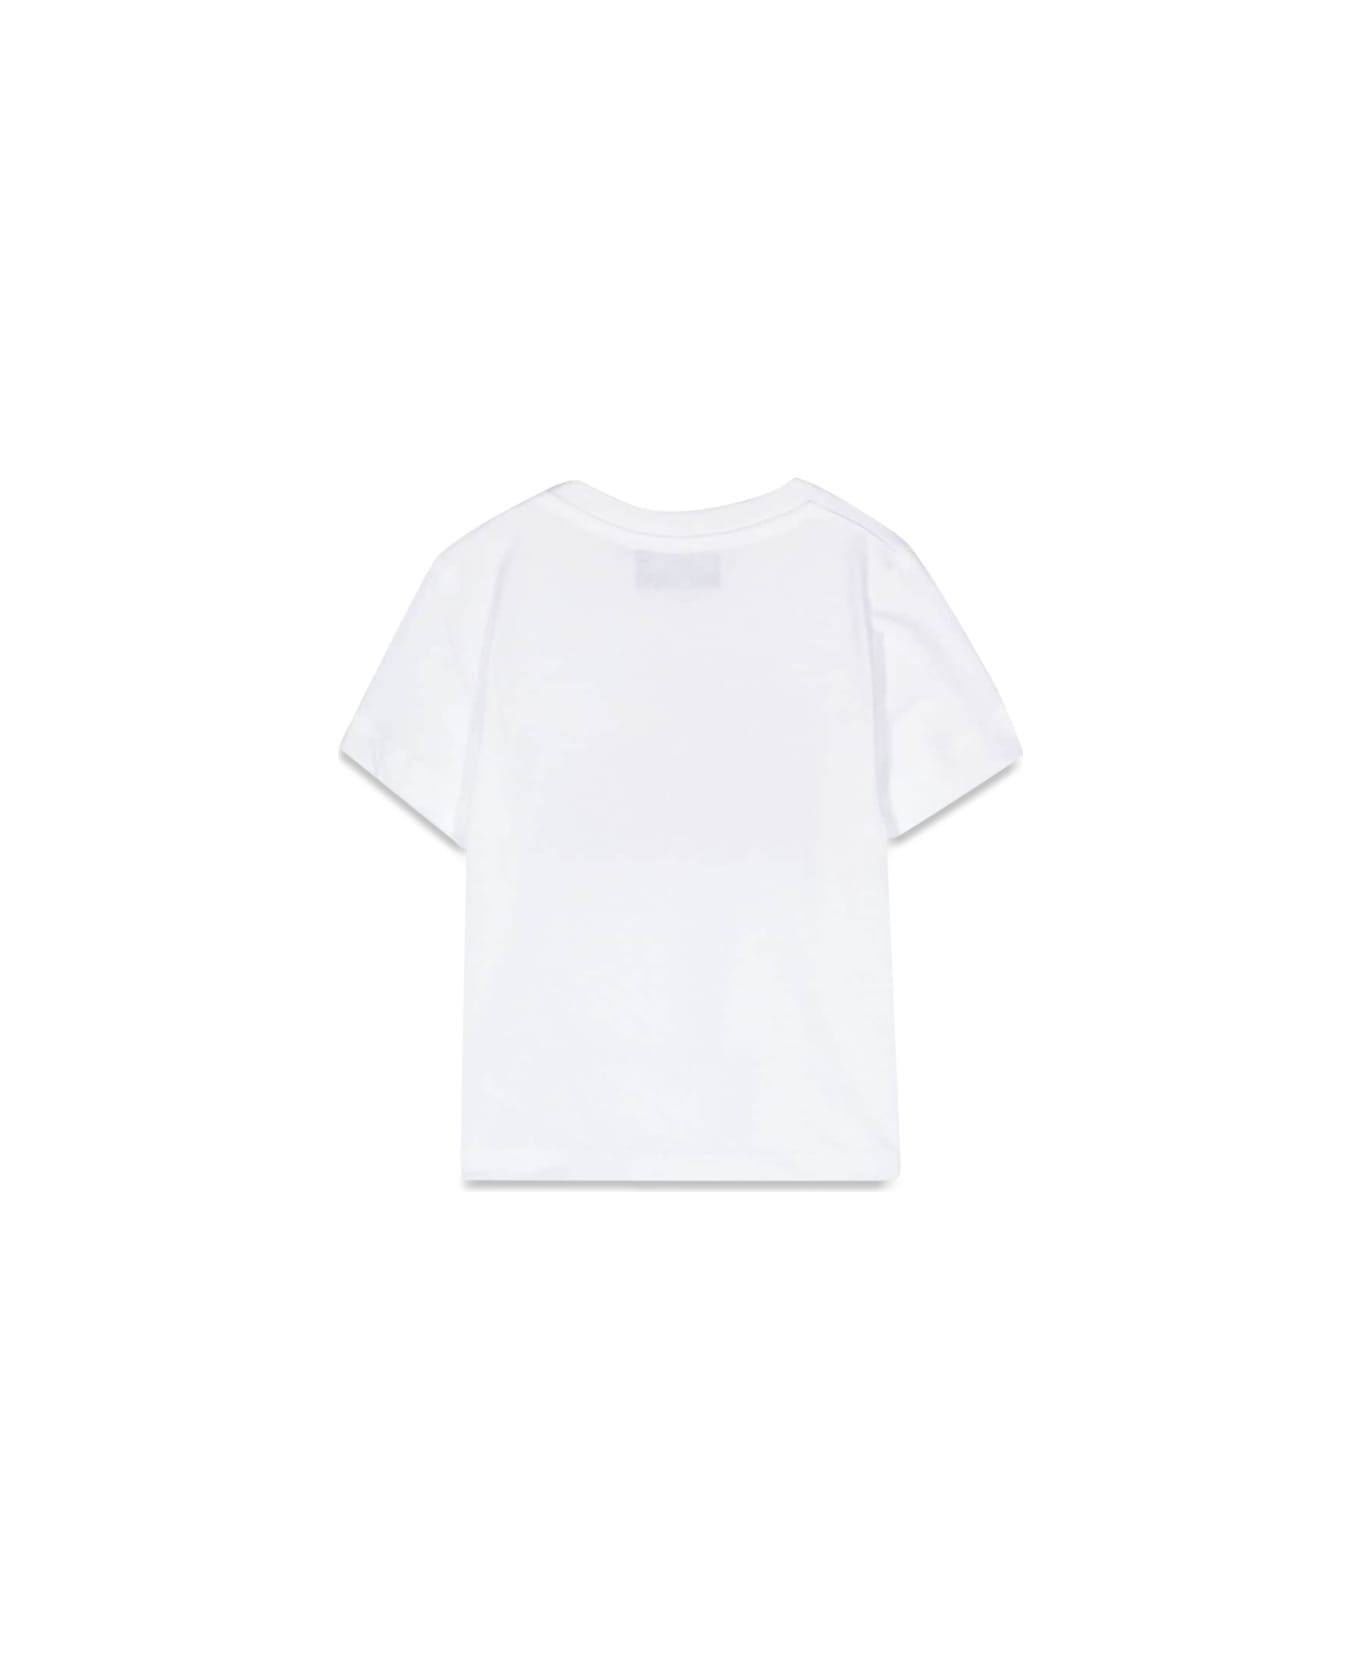 Moschino T-shirt - WHITE